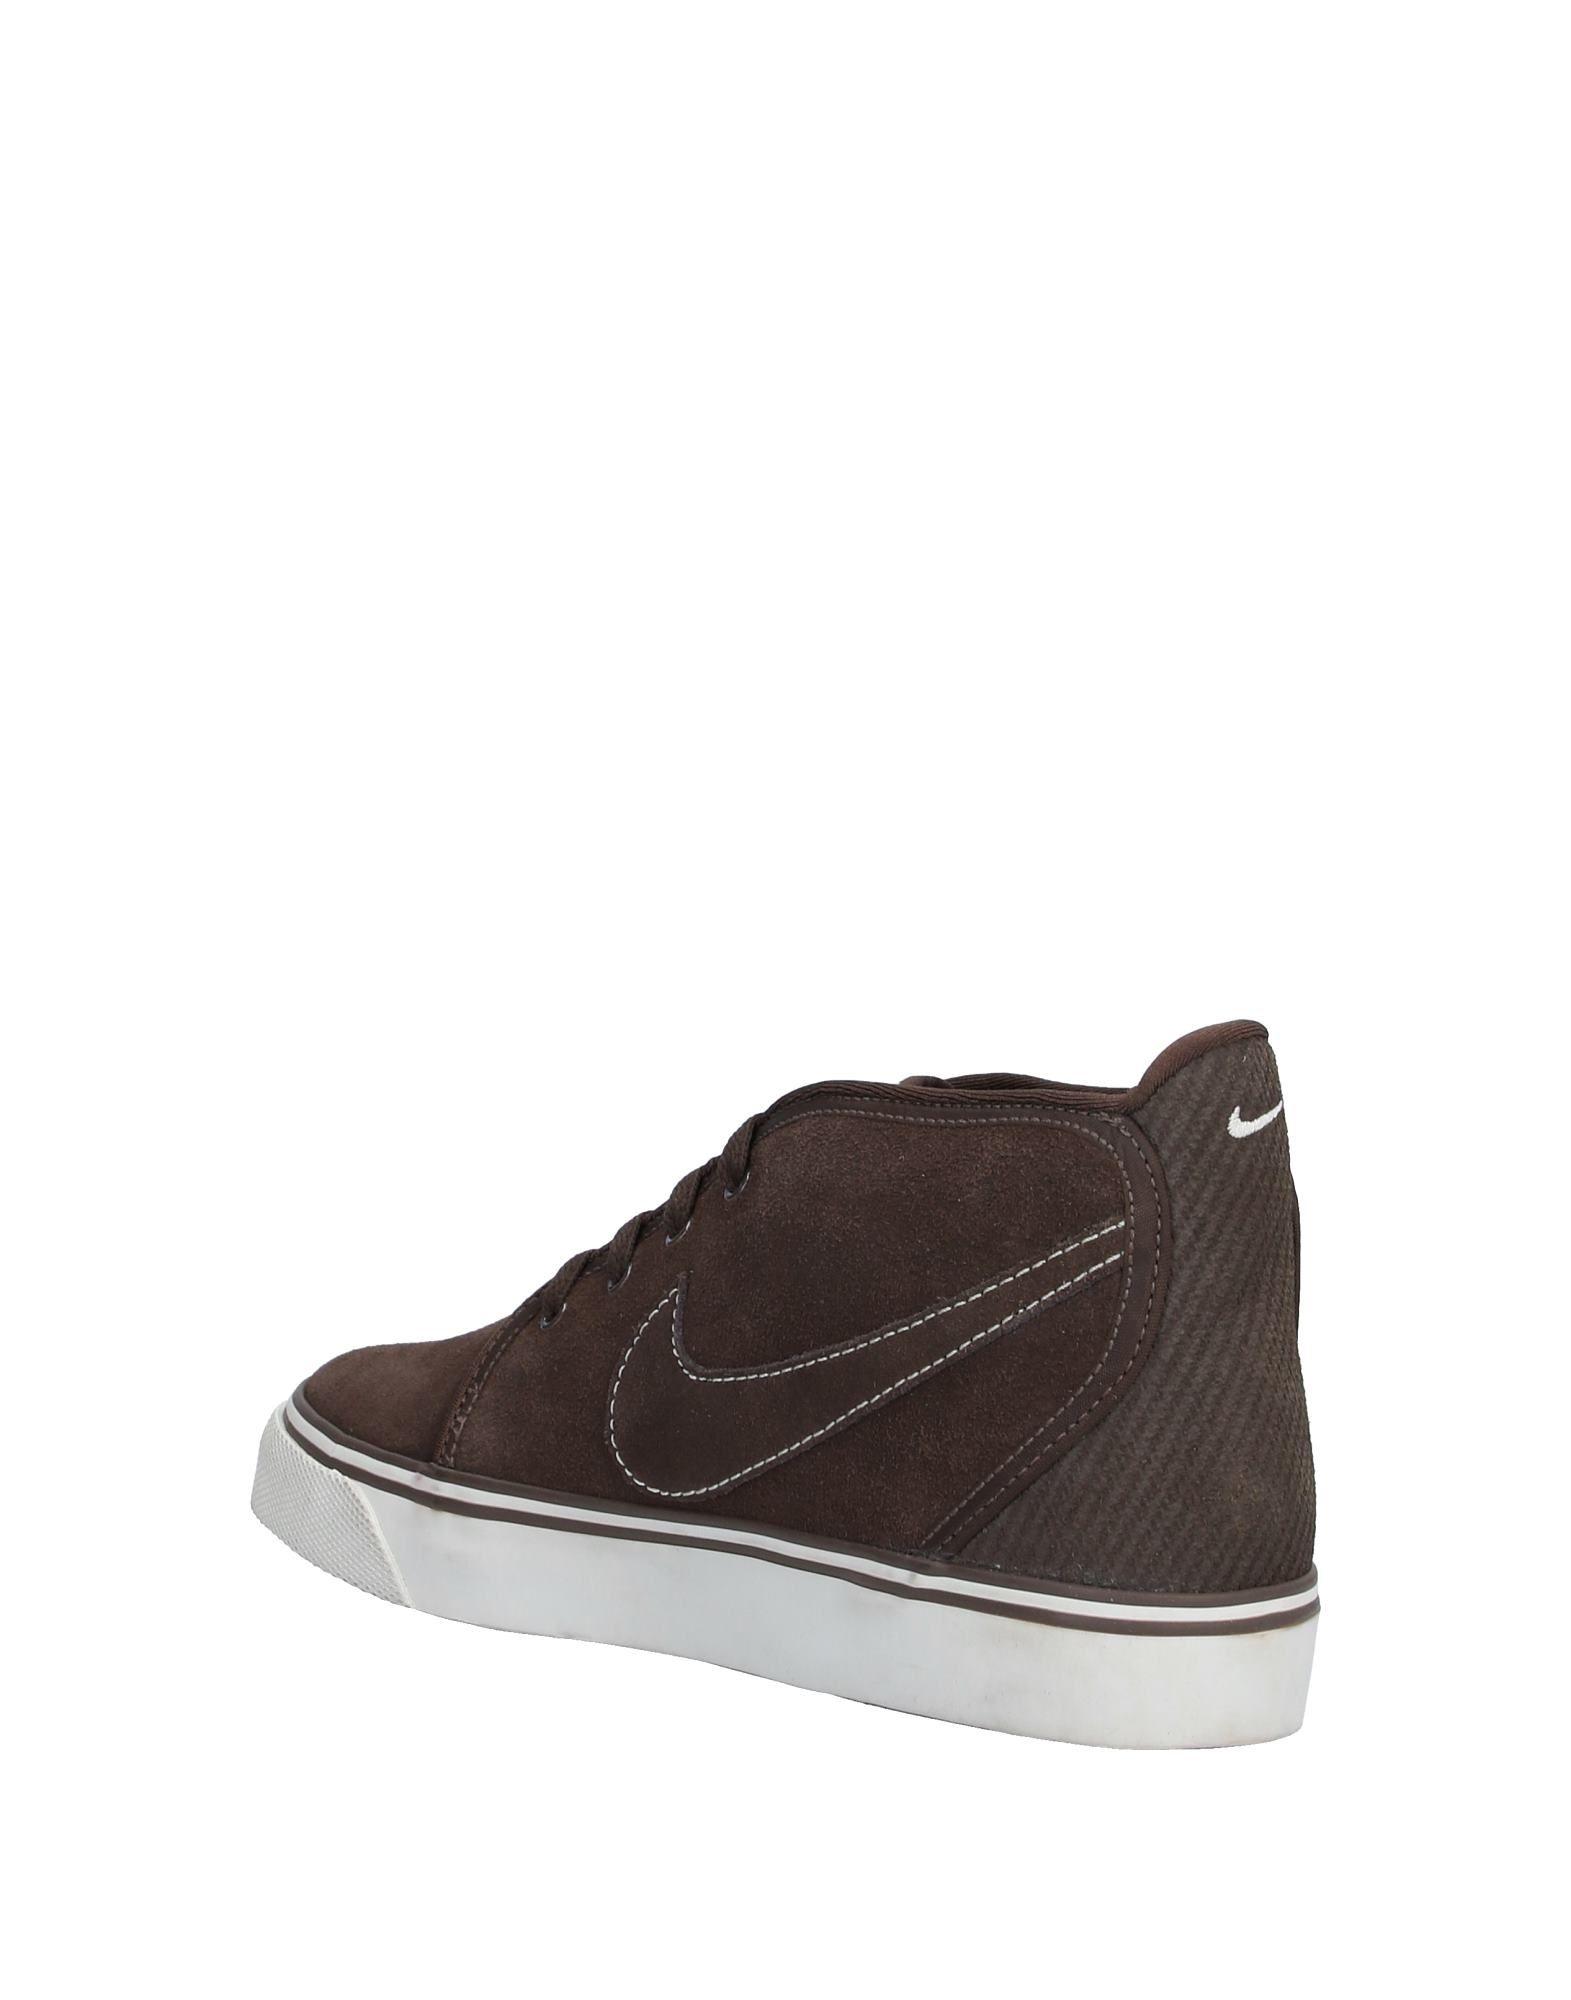 Nike Suede High-tops & Sneakers in Dark Brown (Brown) for Men - Lyst